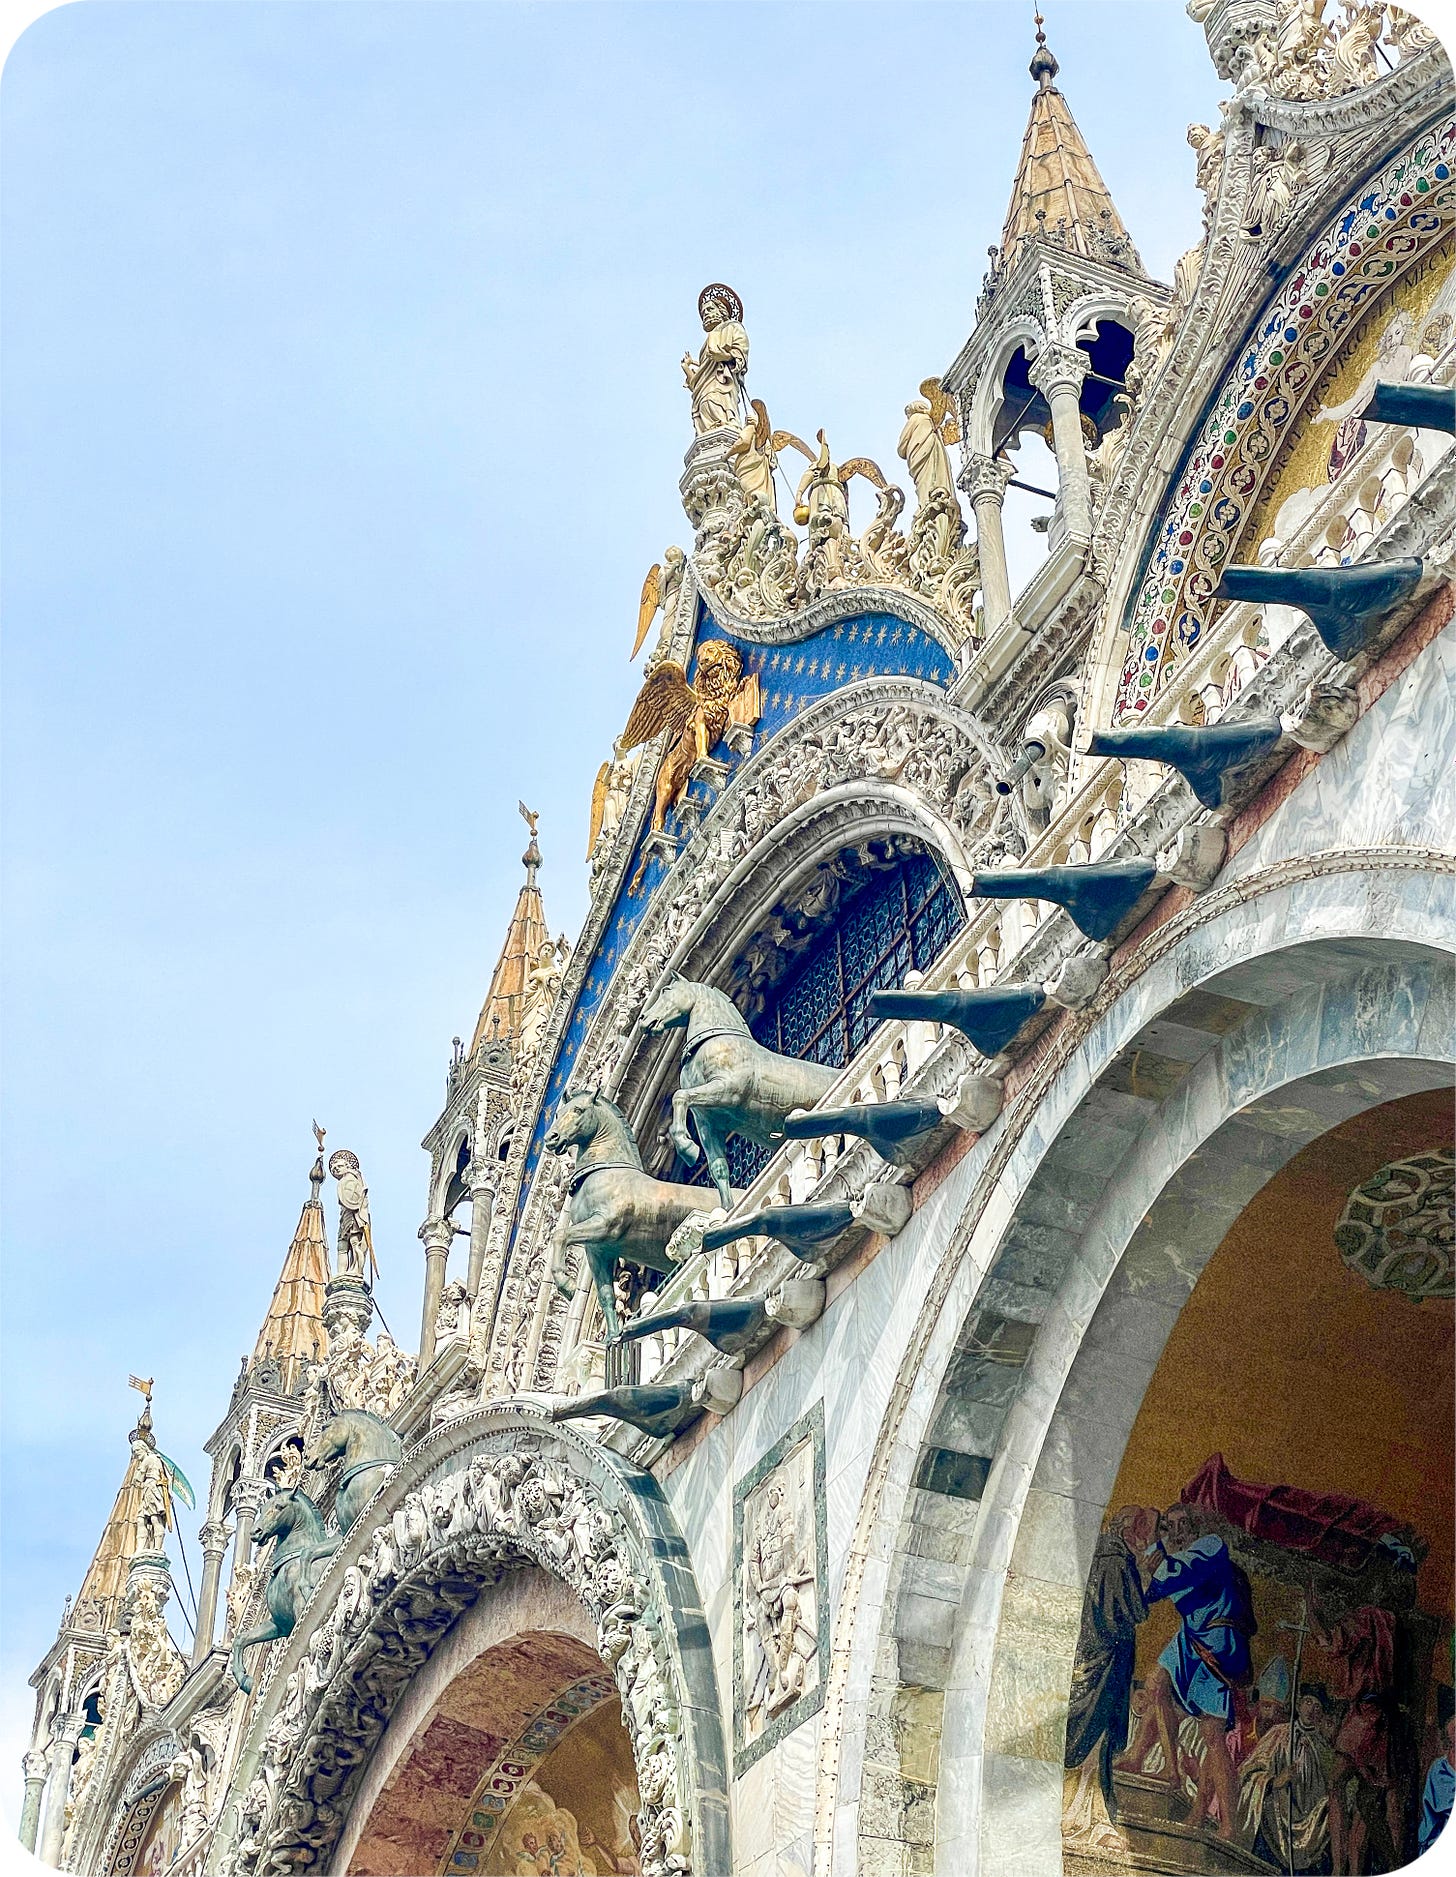 San Marco, Venice, Italy facade